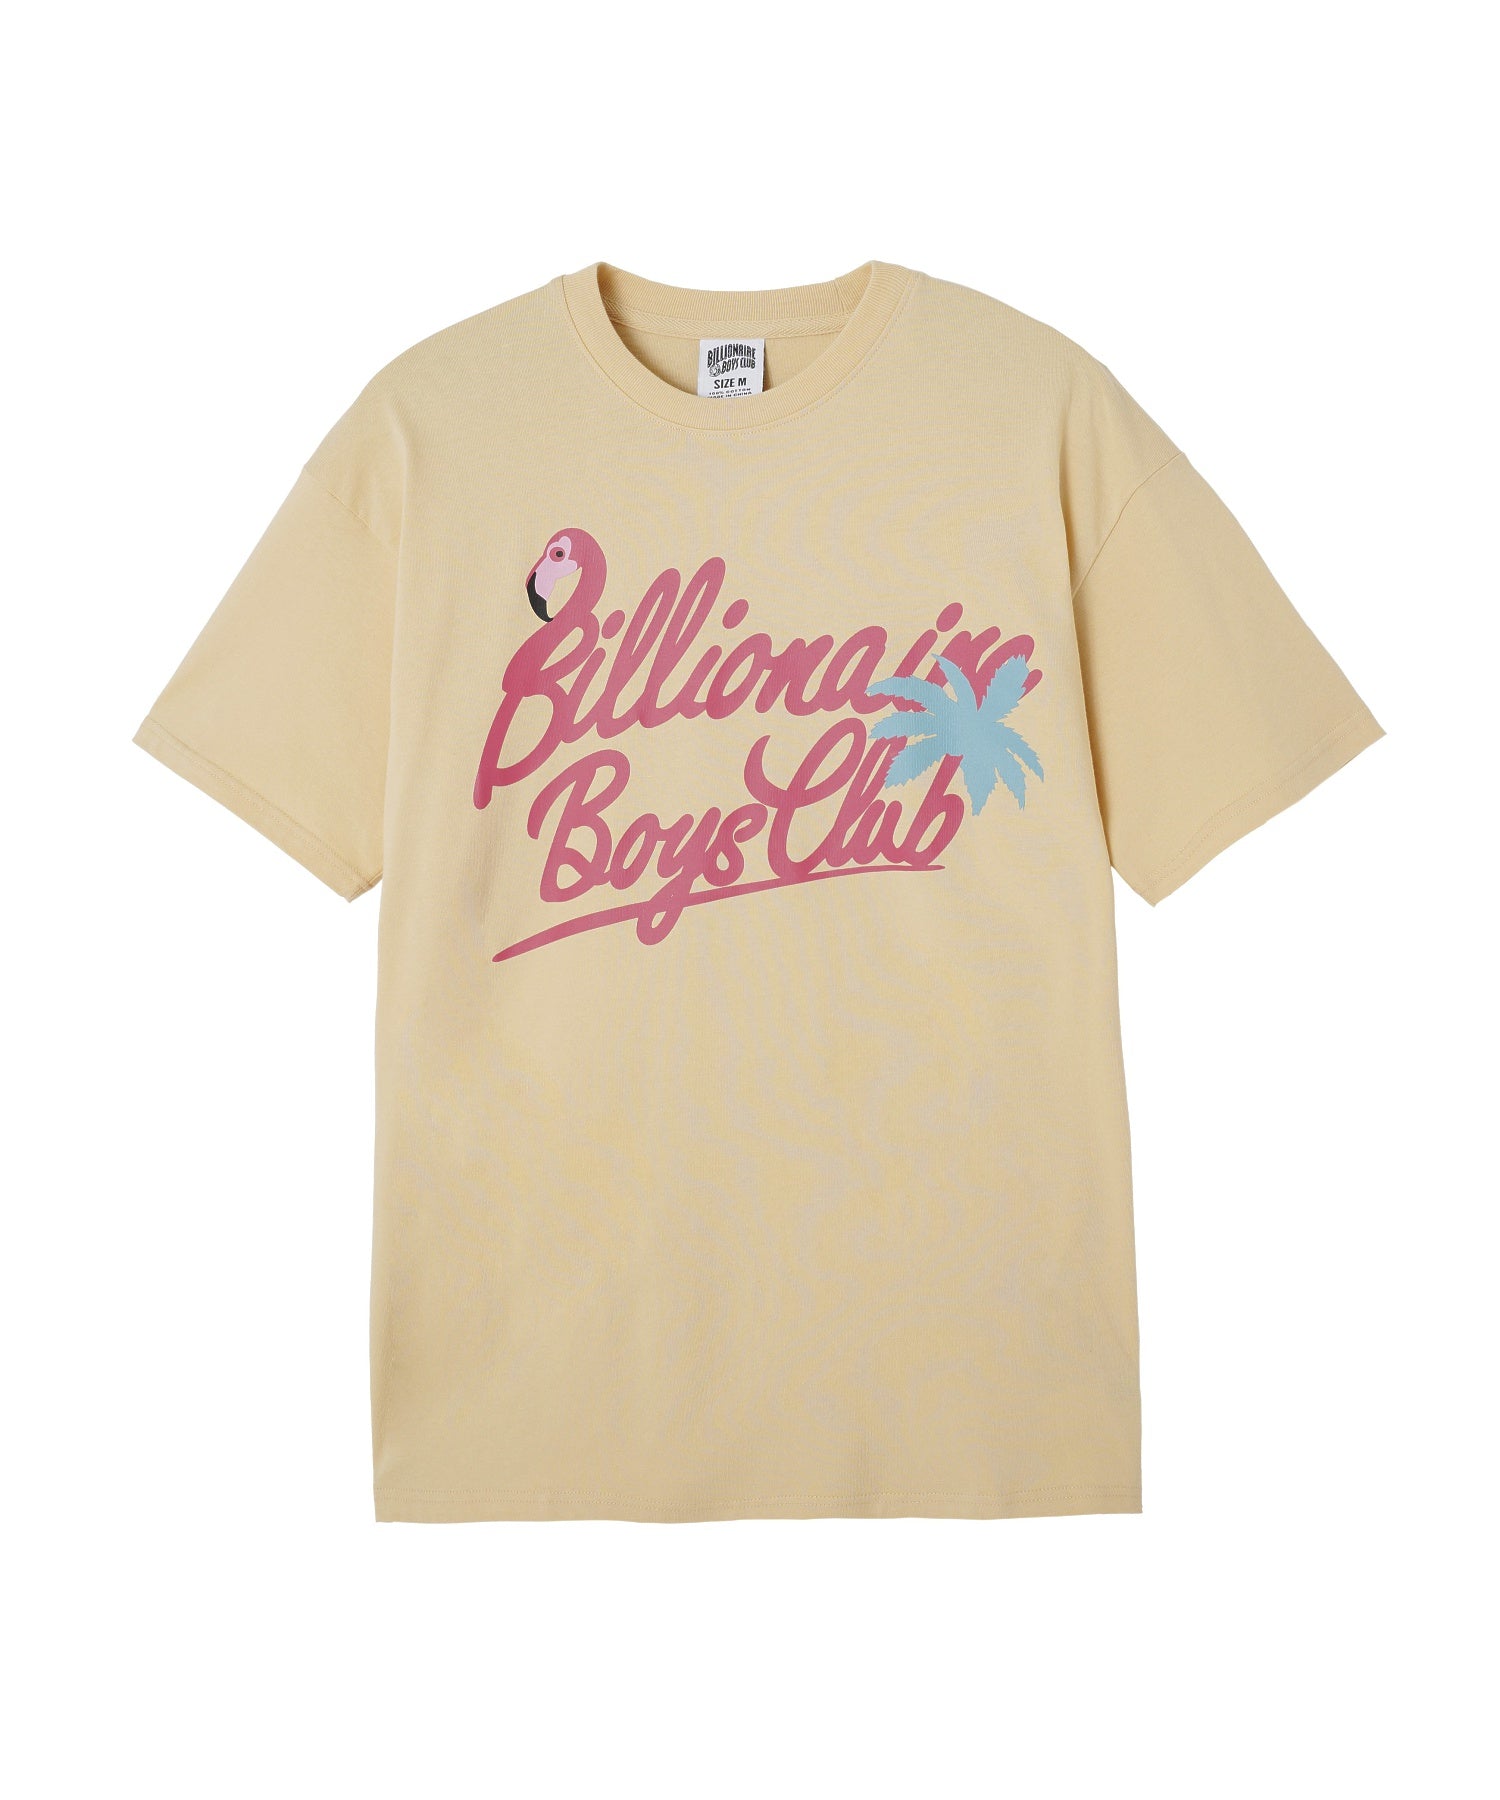 BILLIONAIRE BOYS CLUB/ビリオネア・ボーイズ・クラブ/BB FLAMILLIONAIRE T-SHIRT/841-3207